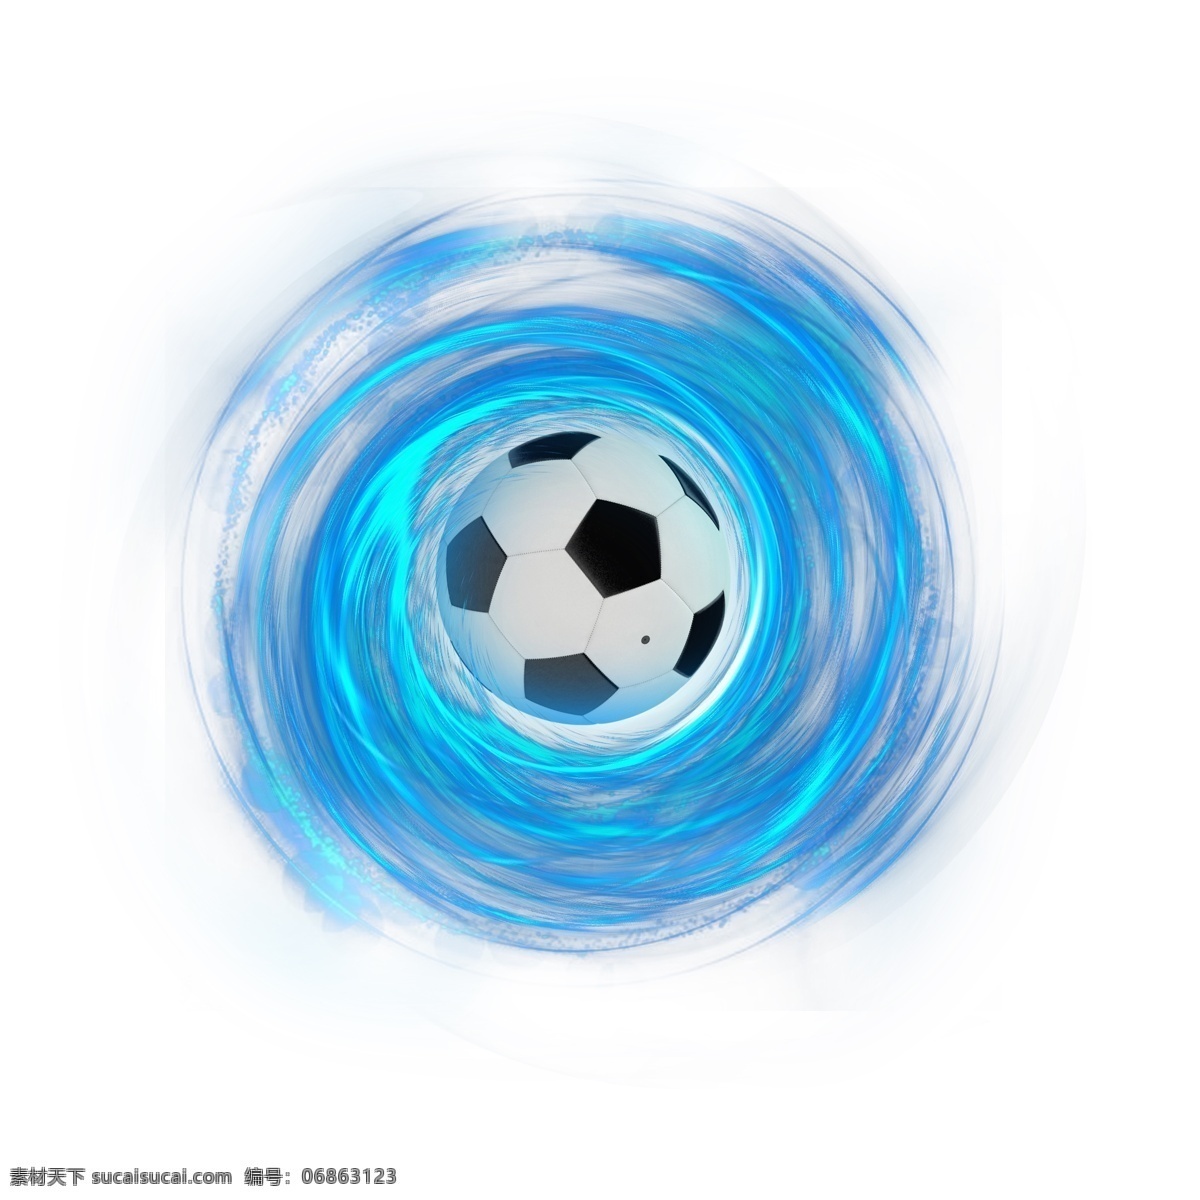 蓝色 炫彩 科技 足球 蓝色旋涡 世界杯 手绘 足球比赛 俄罗斯世界杯 炫彩足球 炫酷足球 彩色 渐变 现代感 线条 扭曲 世界杯设计